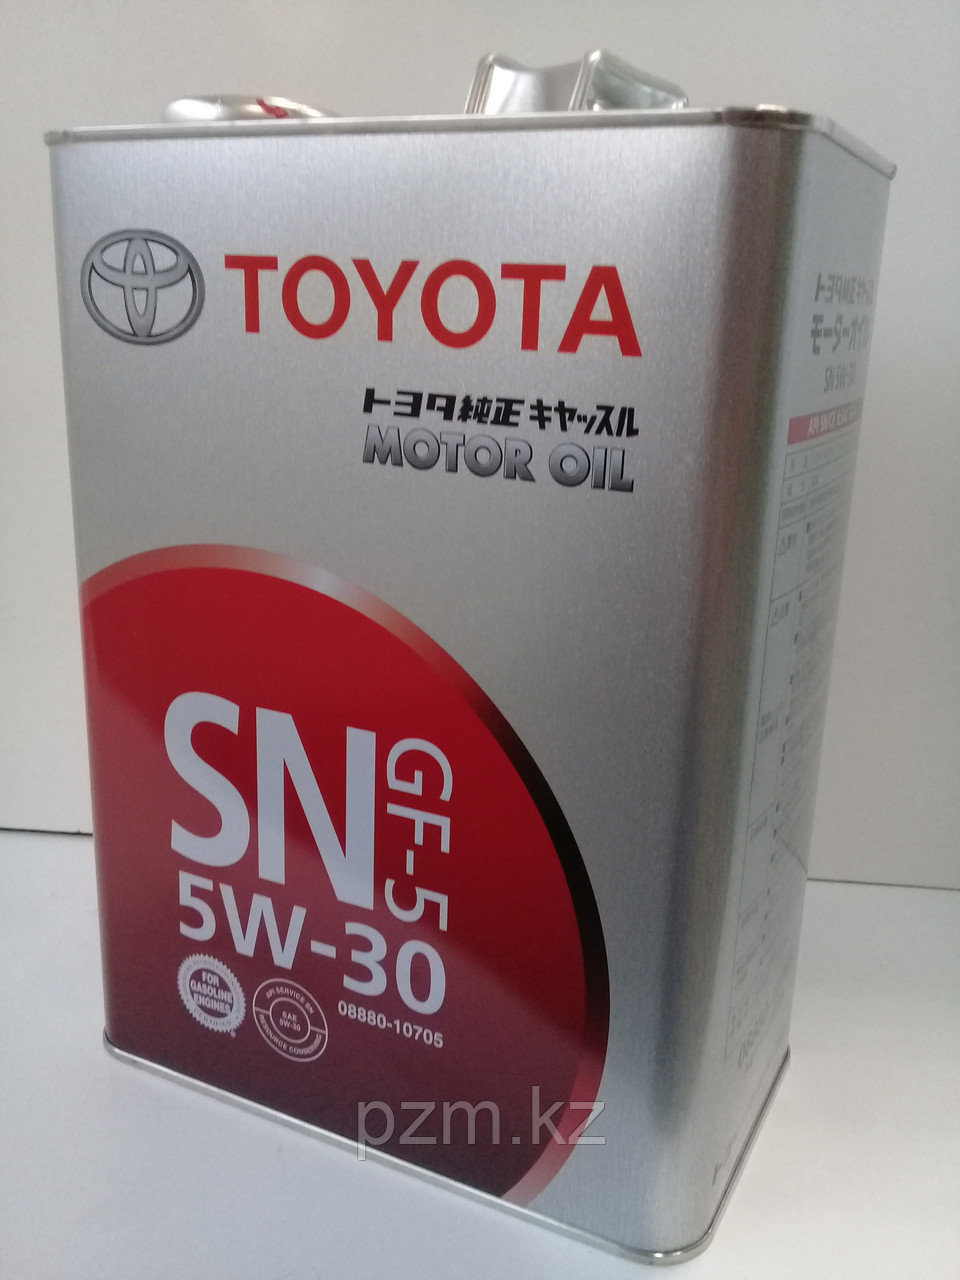 Замена масла в двигателе Toyota Caldina (масло + фильтр)  оригинальное моторное масло тойота 5W30